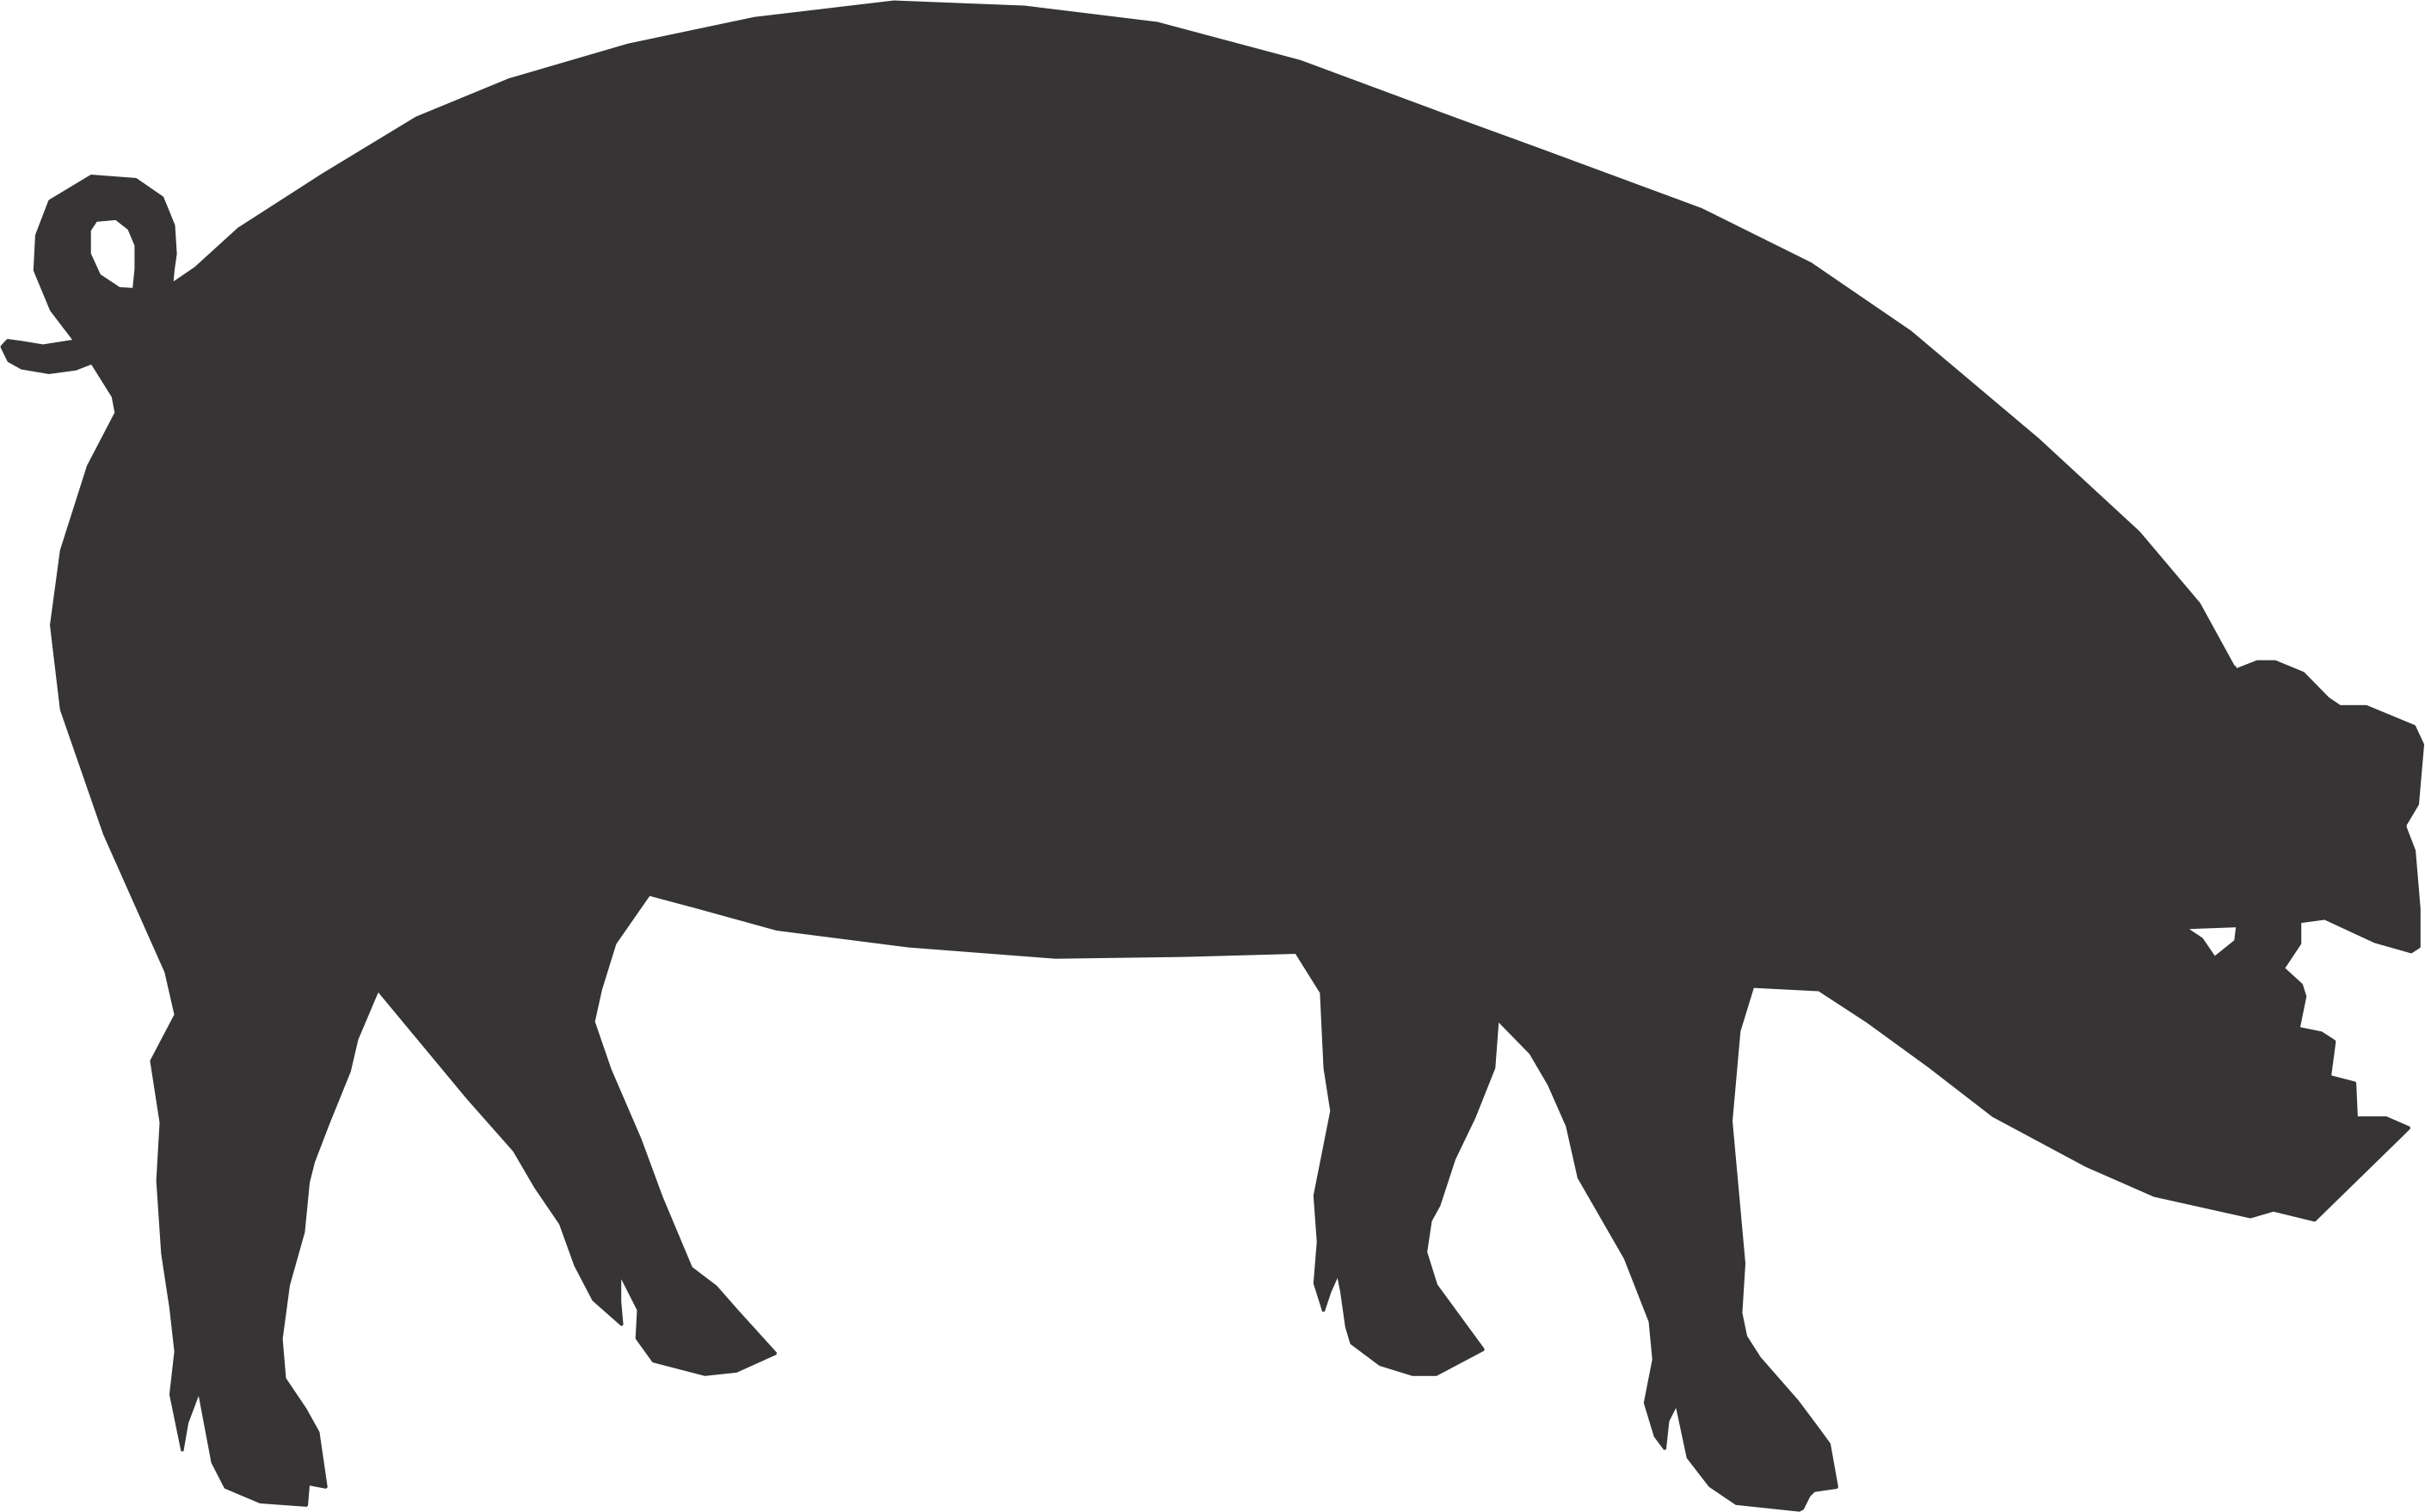 pig silhouette clip art - Pig Silhouette Clip Art